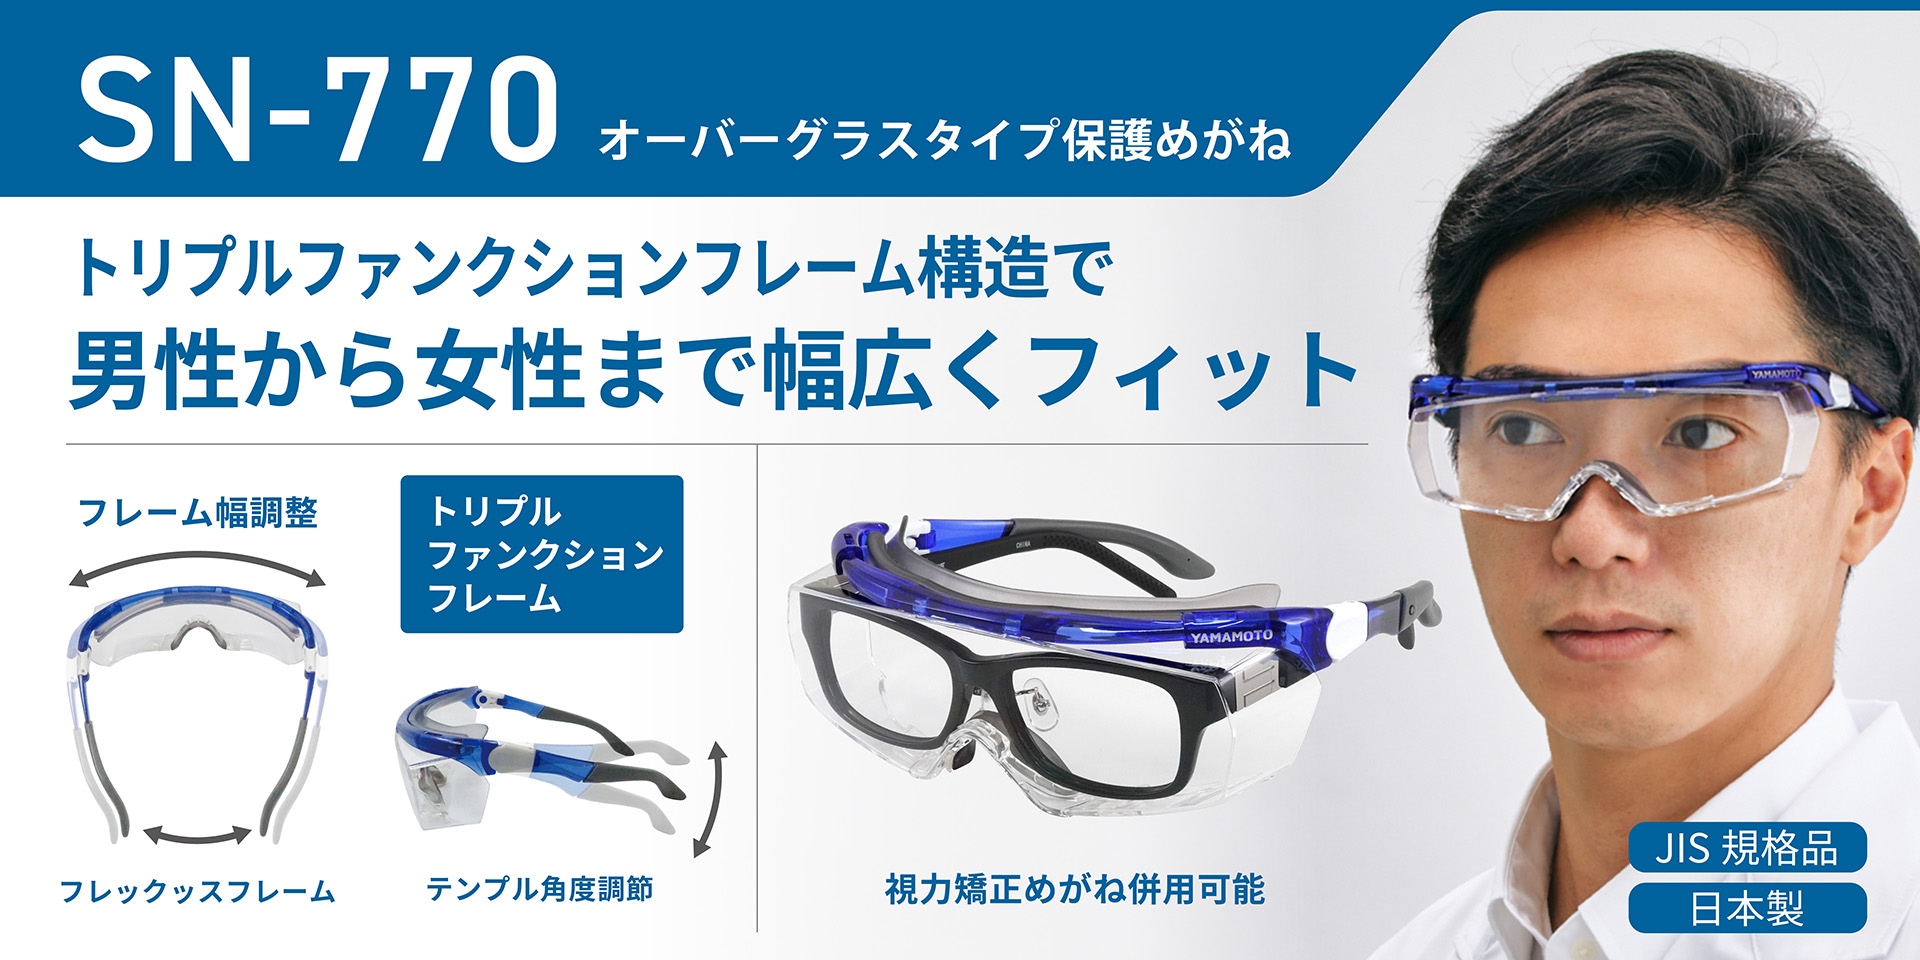 贈物 YAMAMOTOゴーグル 保護メガネ YG-5090 HF N コロナ対策